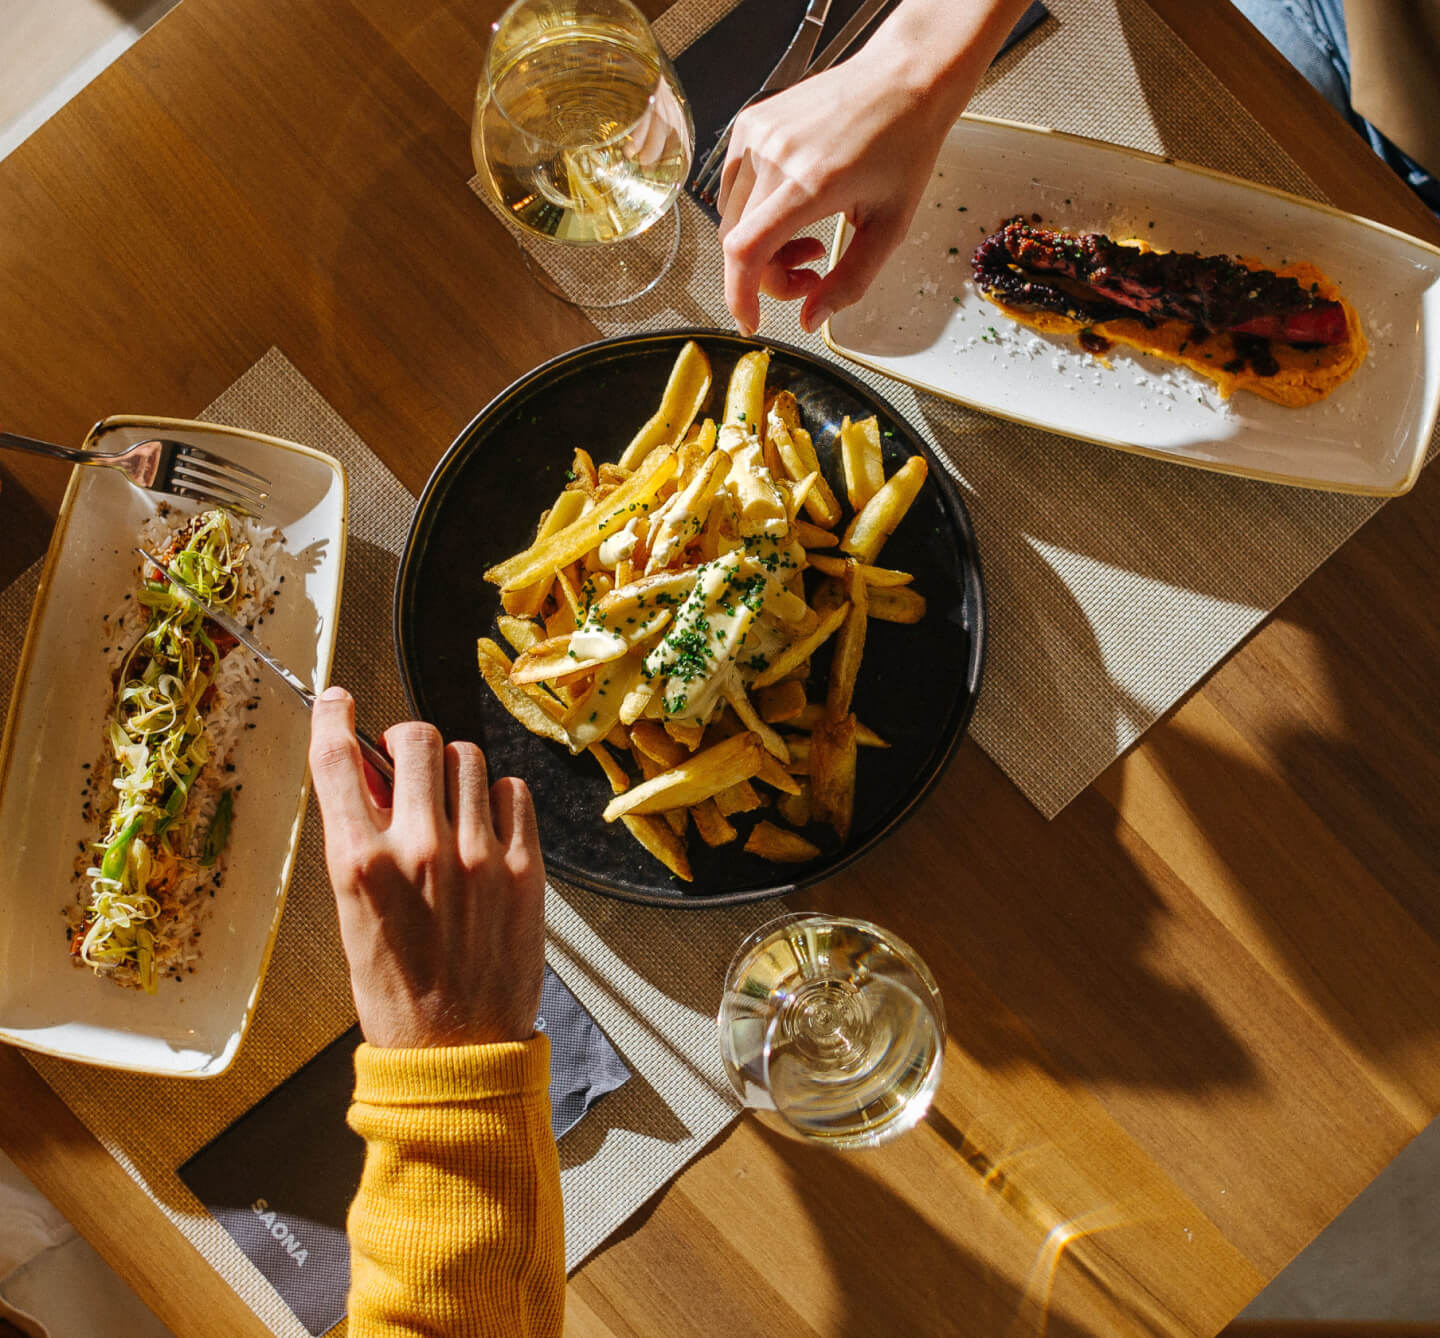 Fotos de 2 brazos cogiend comida en una mesa con dos copas de vino blanco y una luz de atardecer con sombras muy pronunciadas